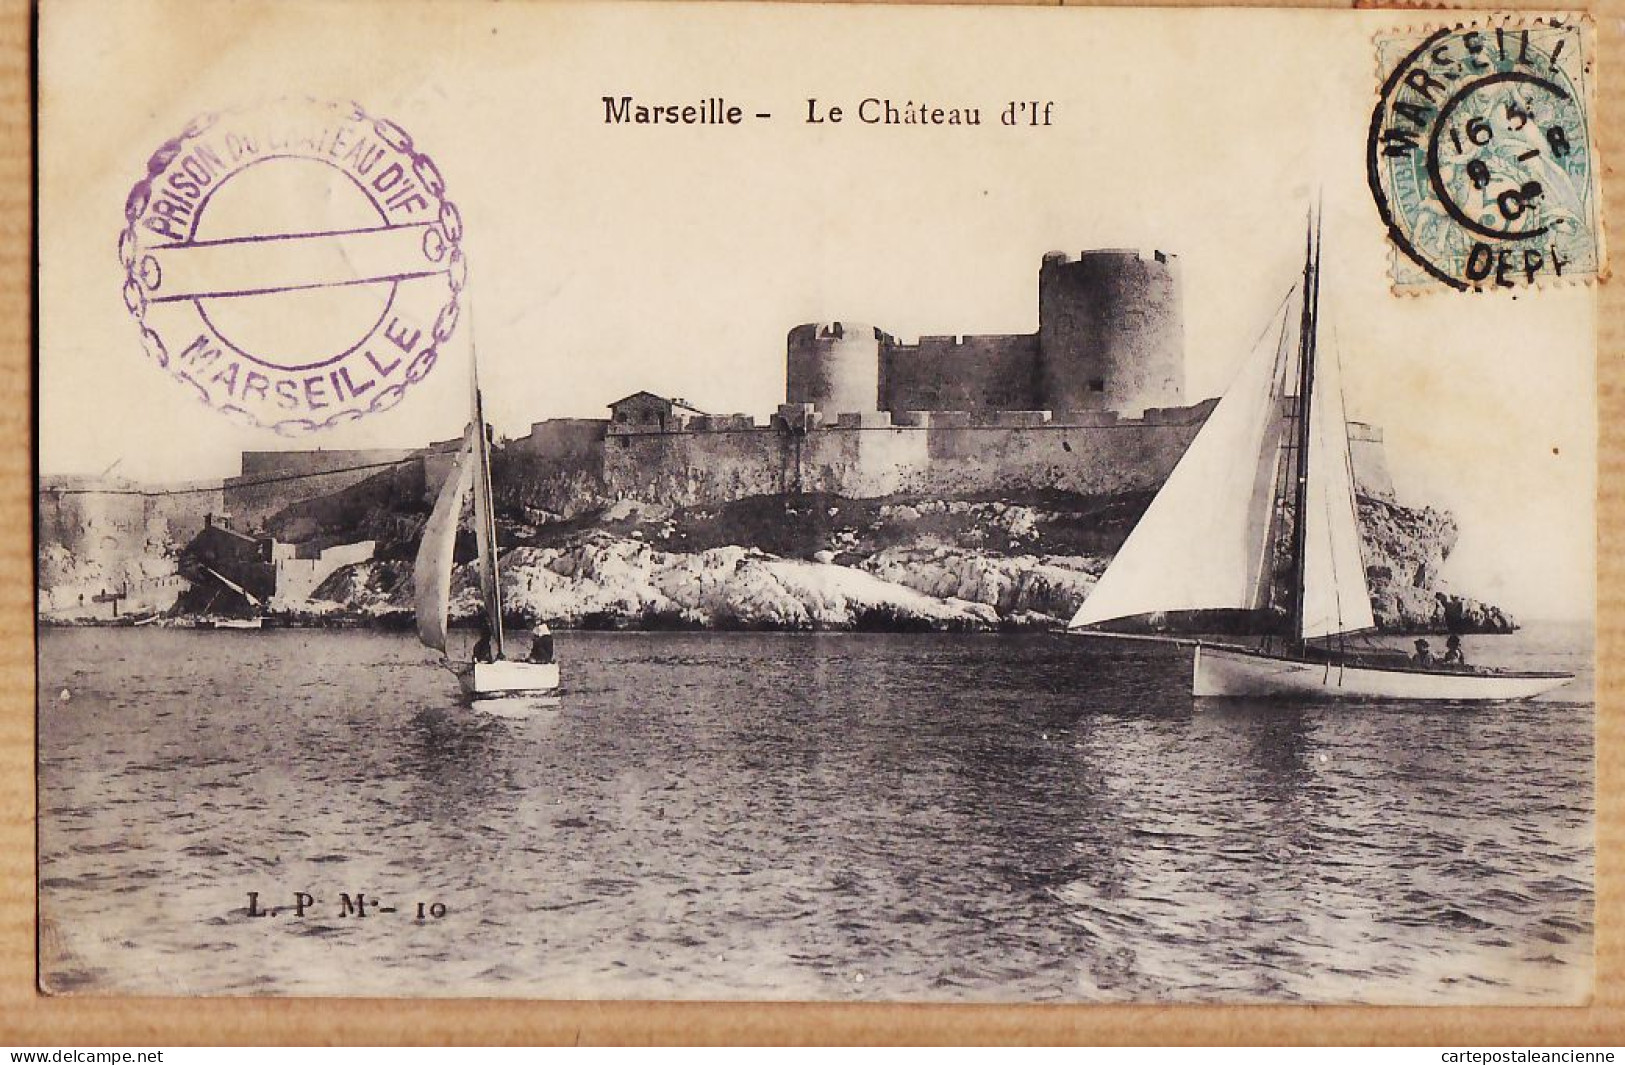 35124 / MARSEILLE Tampon Prison Du Le Château D'IF 1906 à Paul RIPAUX Montargis-L.P.M 10 - Festung (Château D'If), Frioul, Inseln...